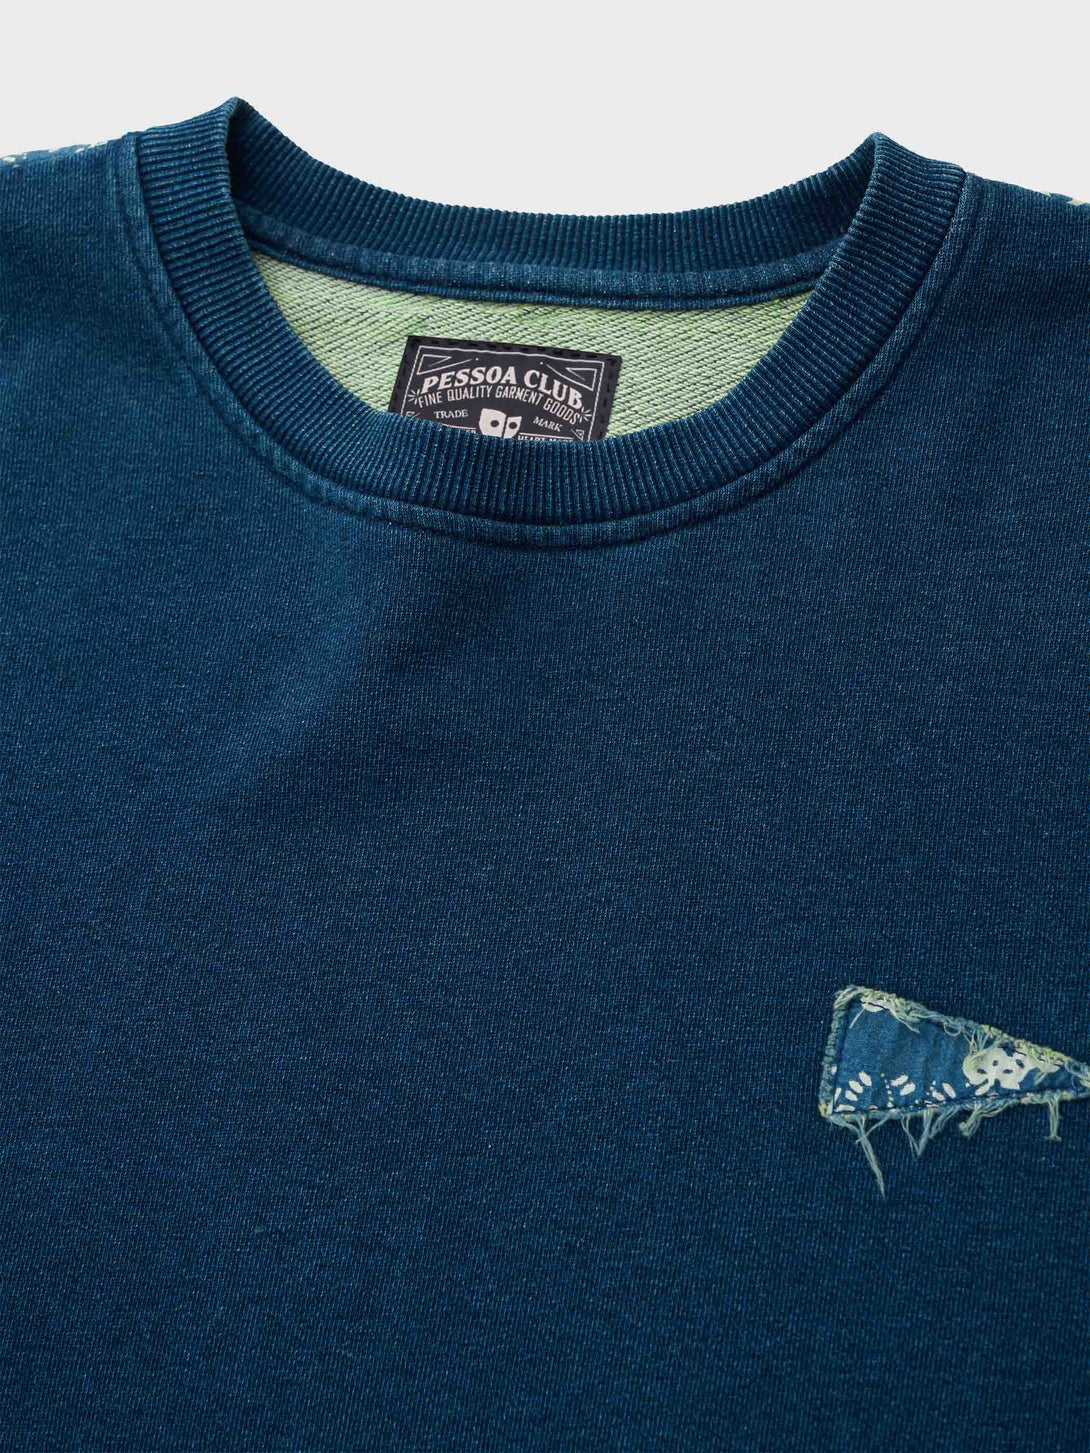 藍染めTシャツのディテール、パッチワーク部分の和柄とウォッシュ加工による色落ち